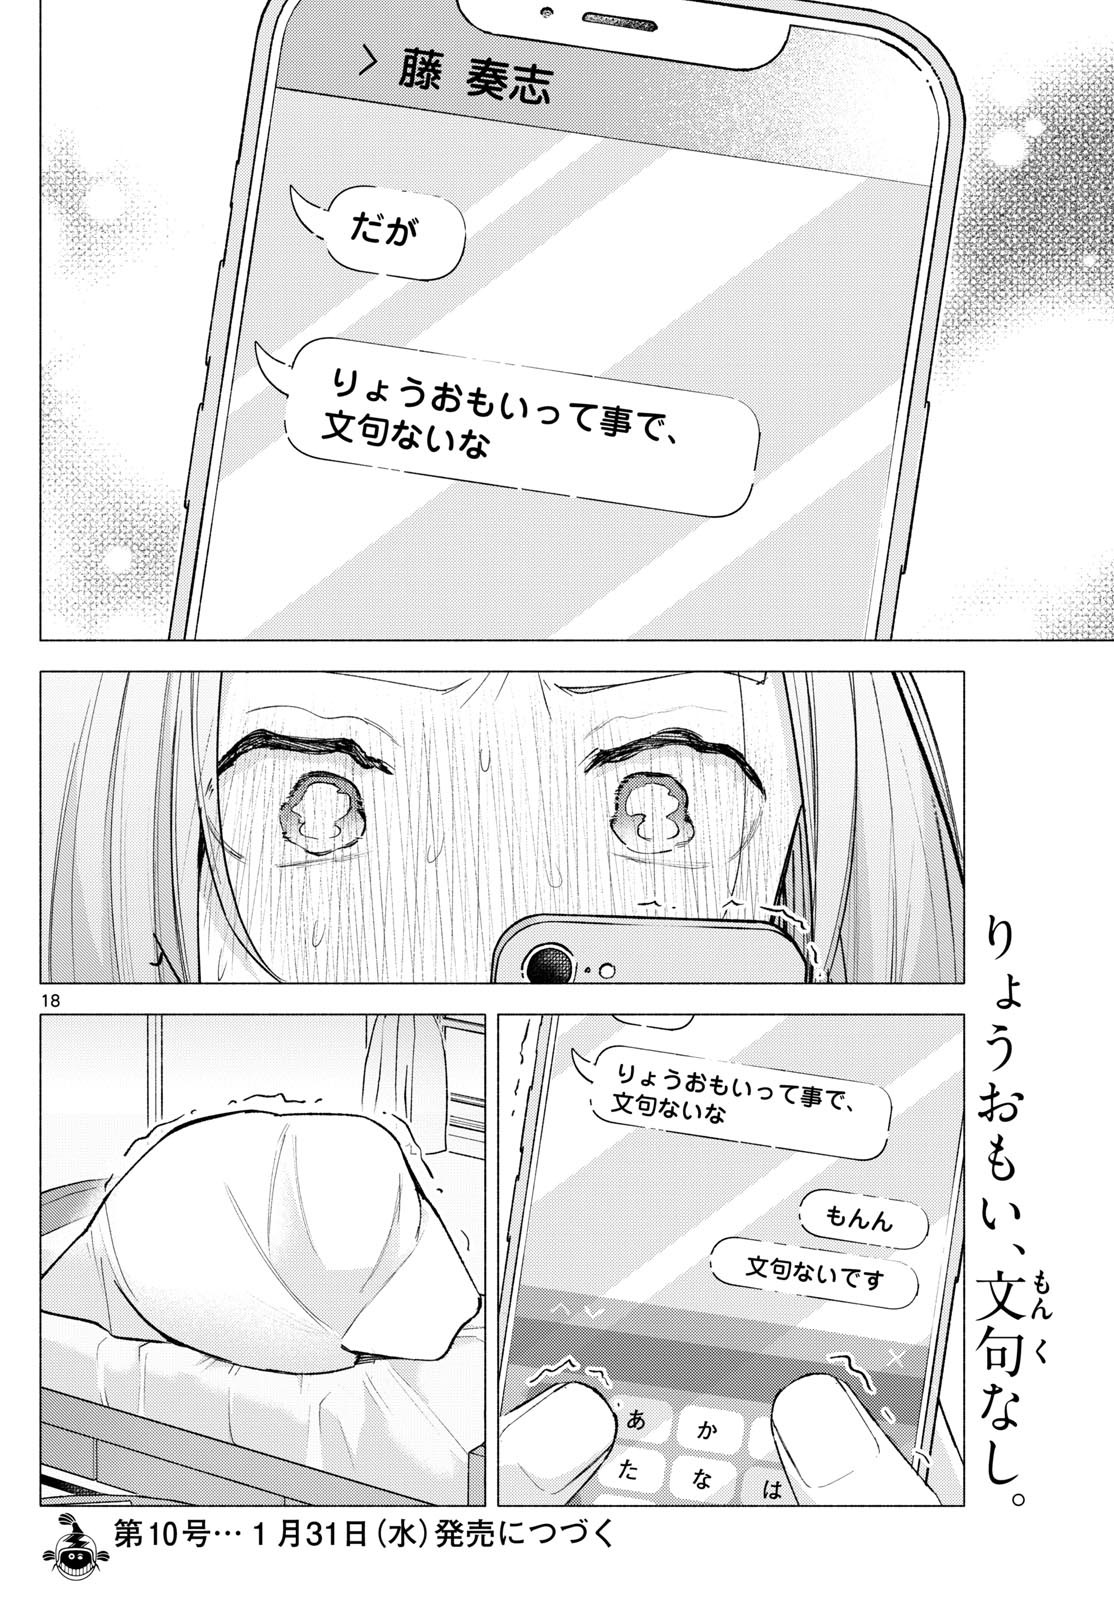 Kimi to Warui Koto ga Shitai - Chapter 059 - Page 18